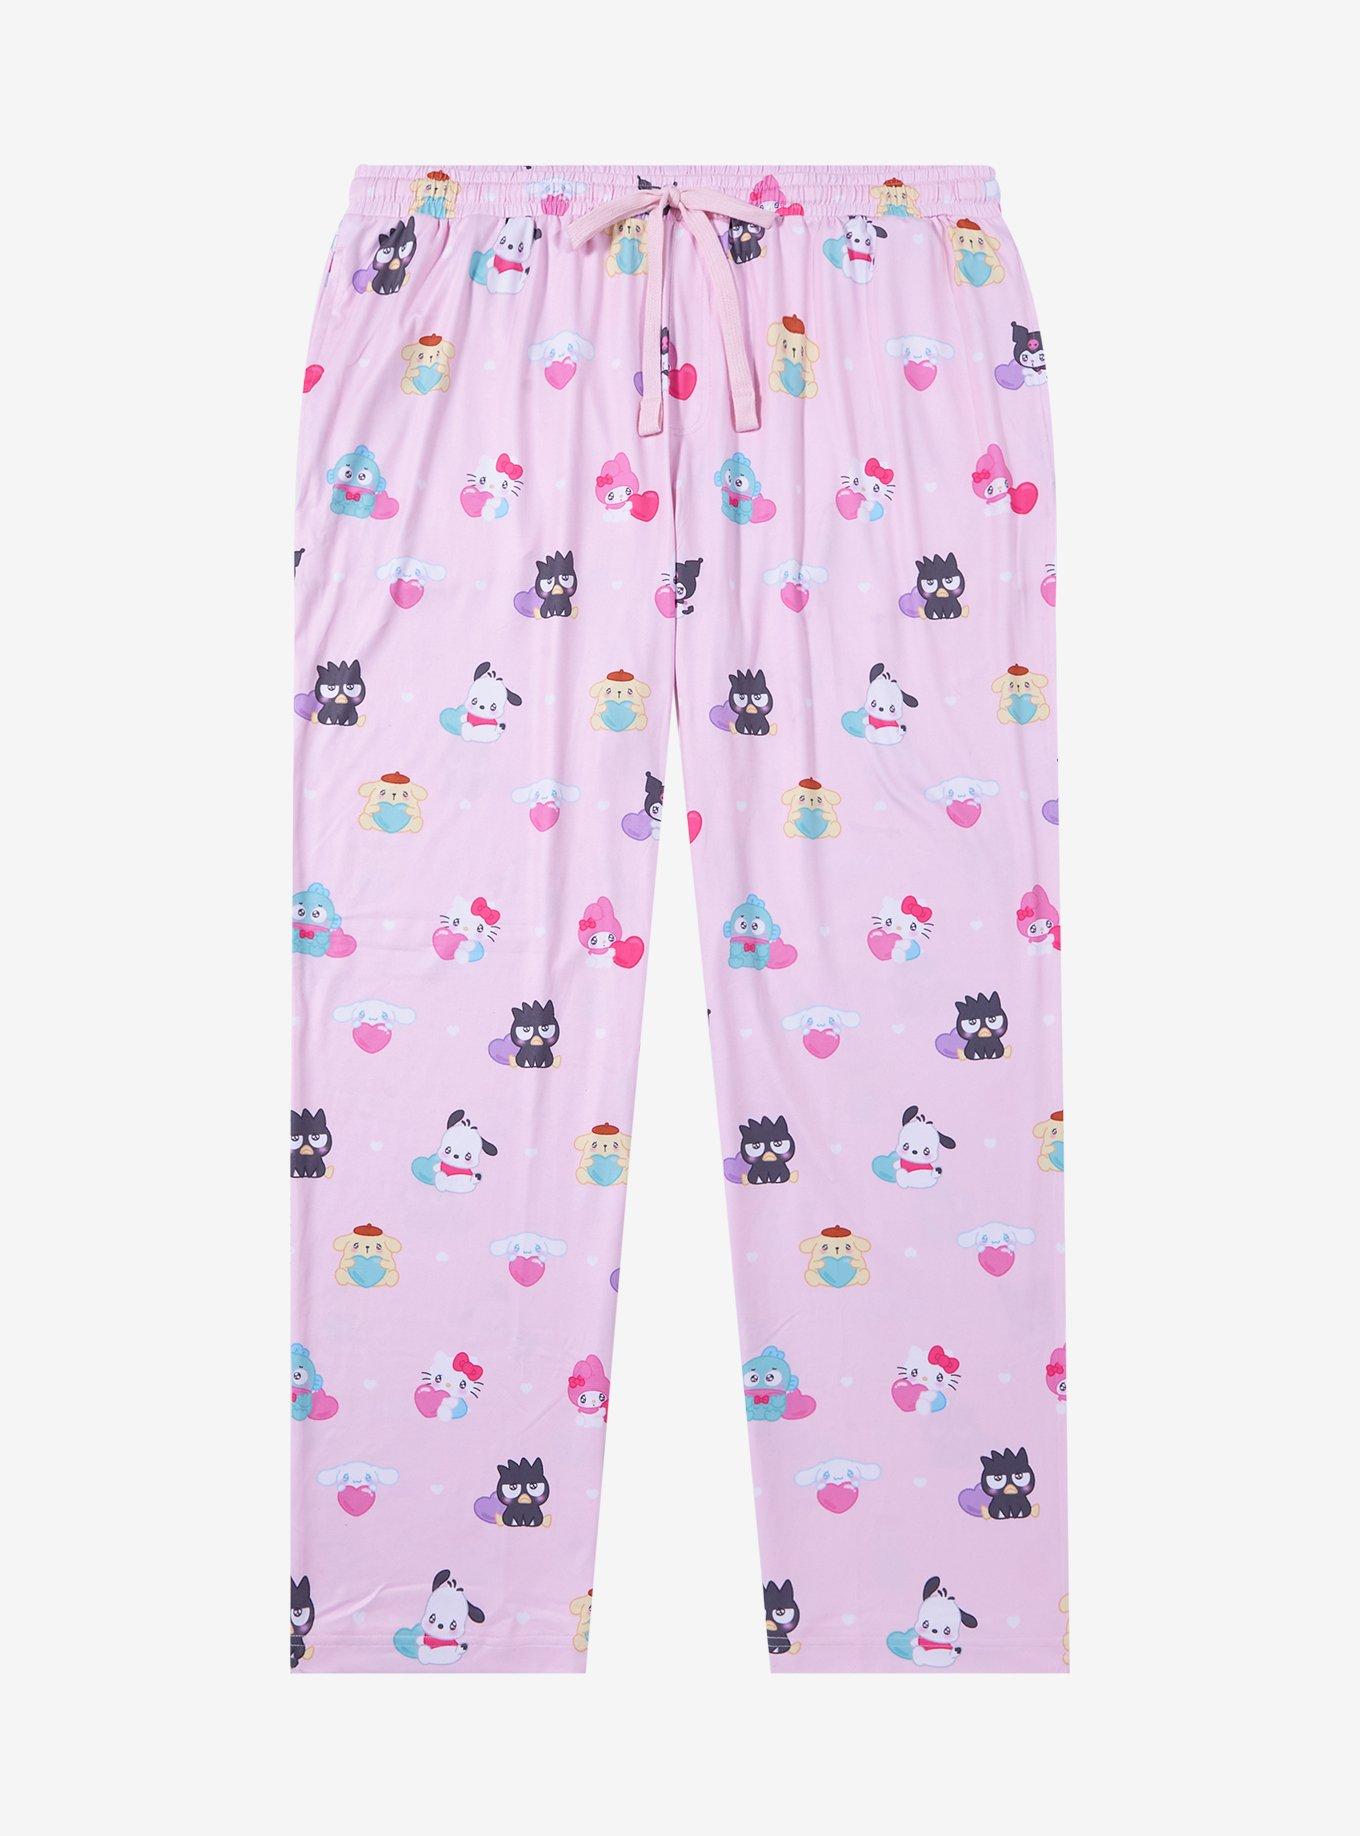 Hello Kitty Women's and Women's Plus Size Plush Sleep Pants, Sizes XS-3X 